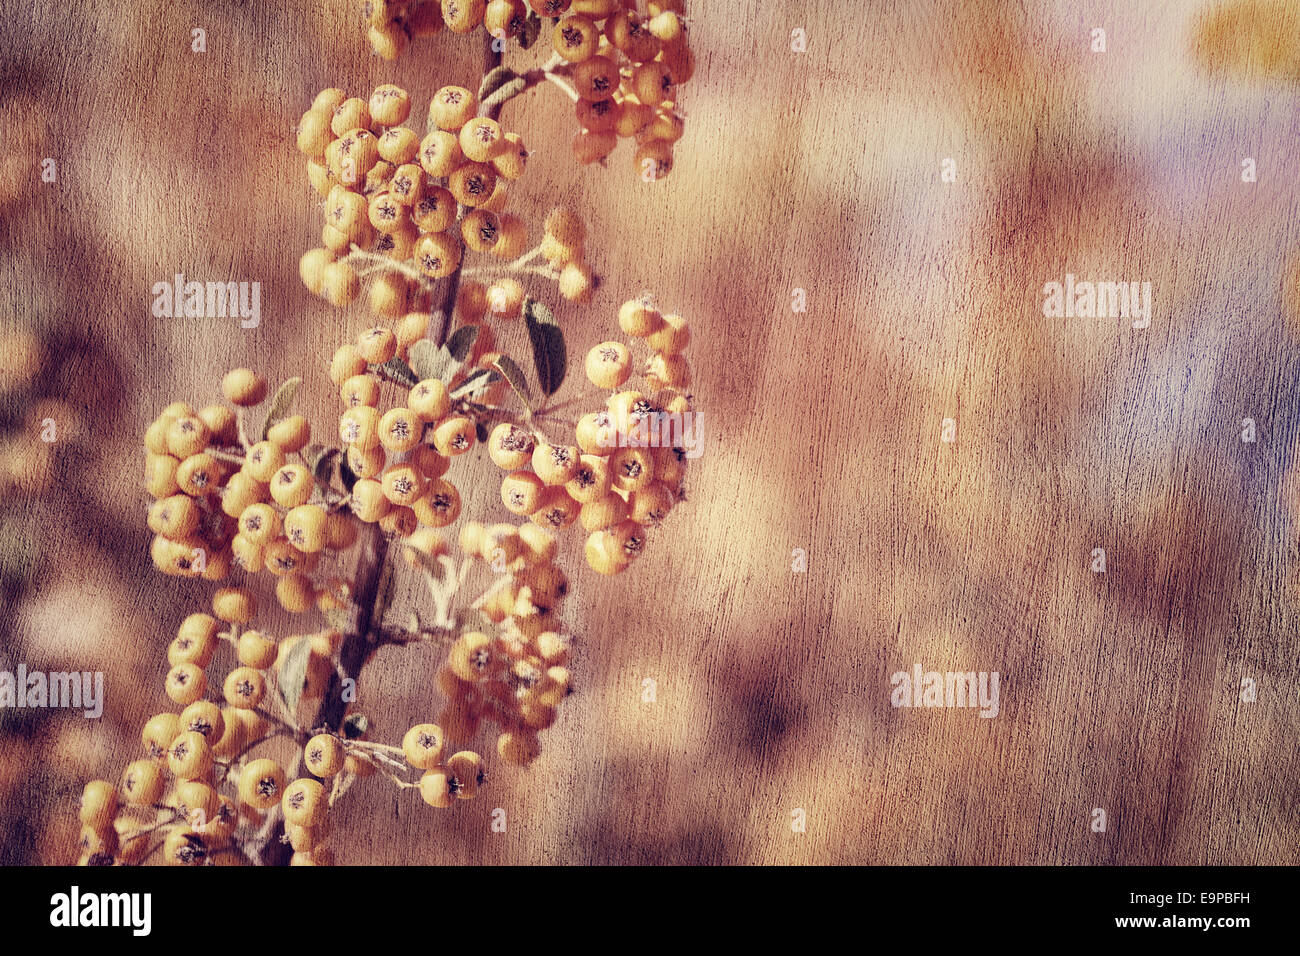 Vogelbeere Hintergrund, Grunge Stil Foto schöne kleine orangefarbene Beere Haufen, Herbsternte Saison Konzept Stockfoto